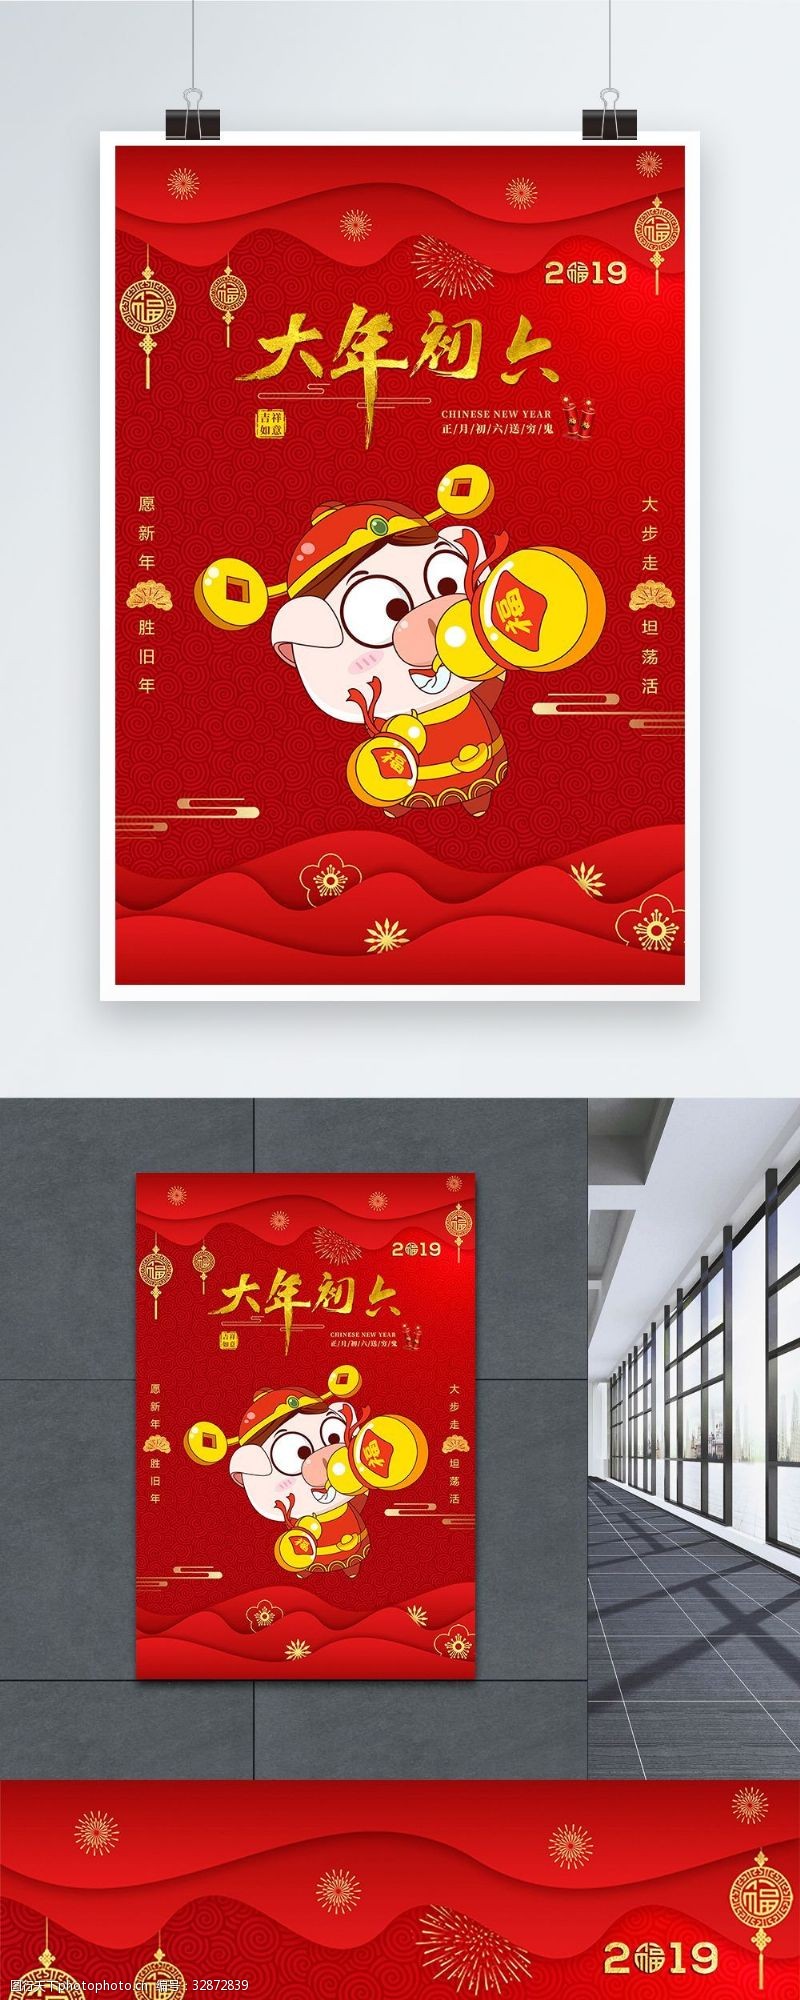 荣耀2019红色2019猪年大年初六节日海报